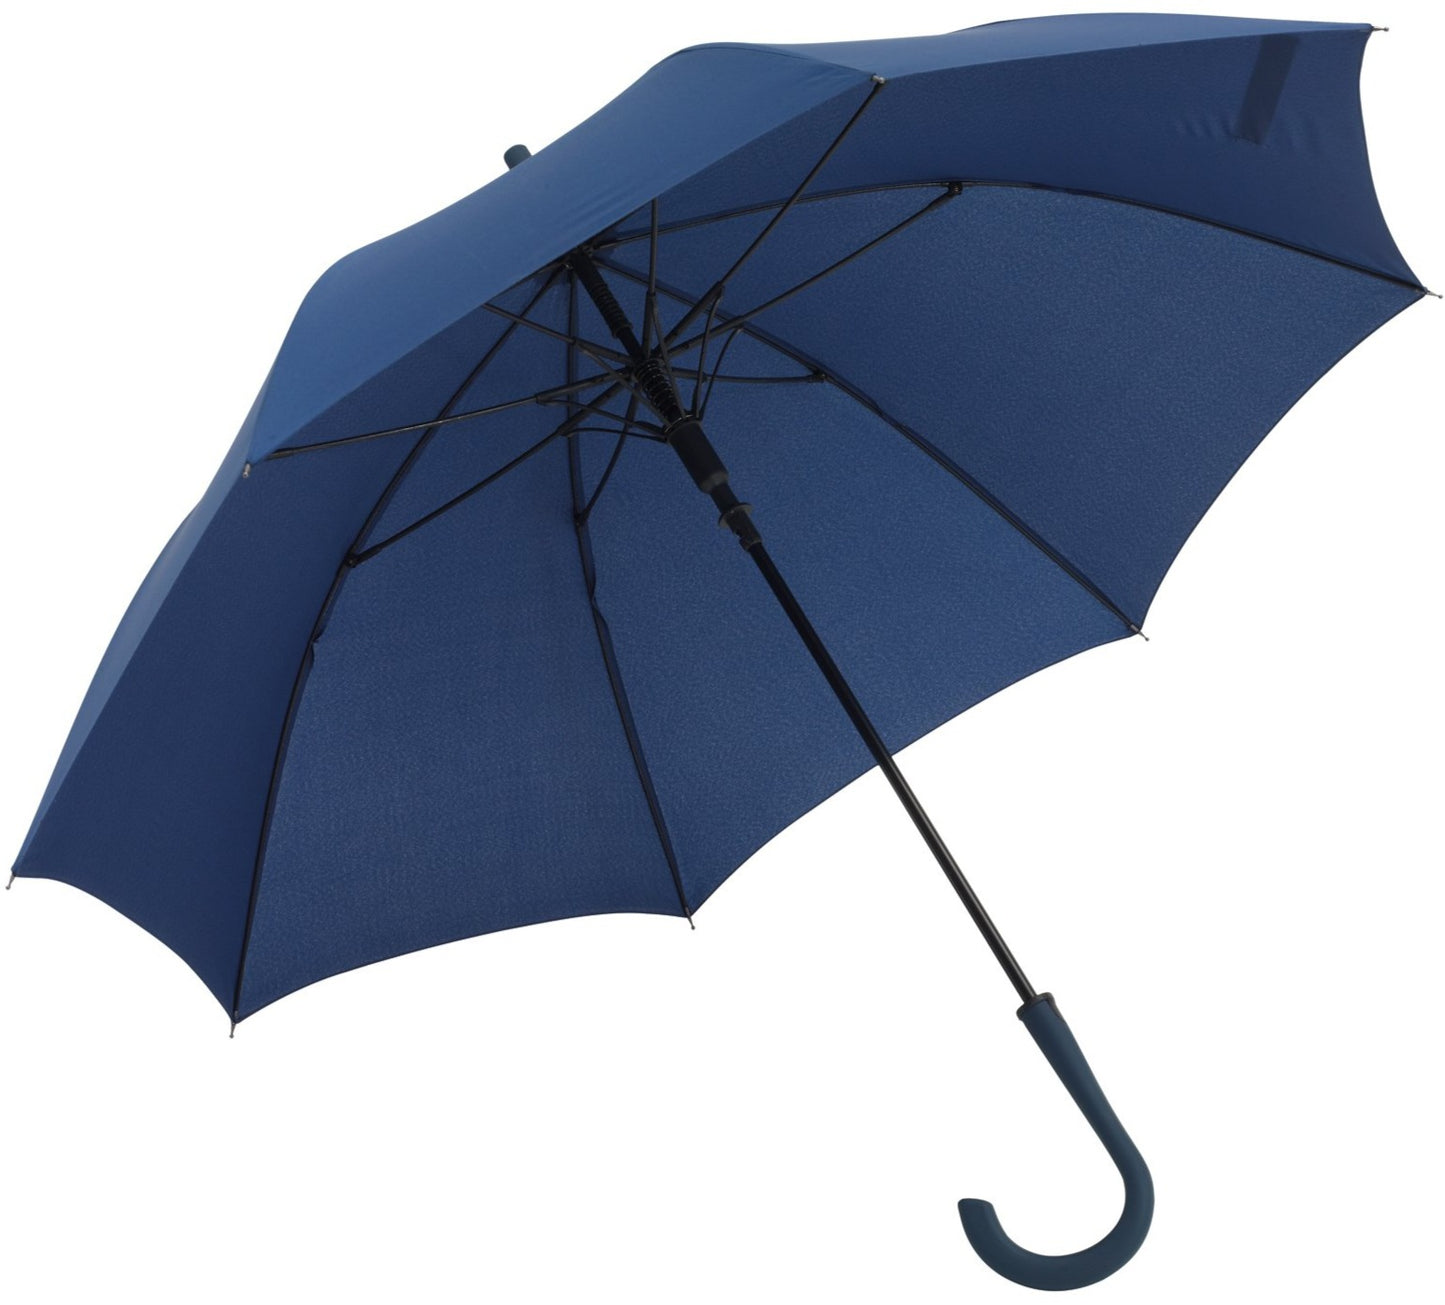 Μπλε μαρίν (σκούρο) ομπρέλα βροχής, αυτόματη, μακριά, με Ανθρακόνημα.